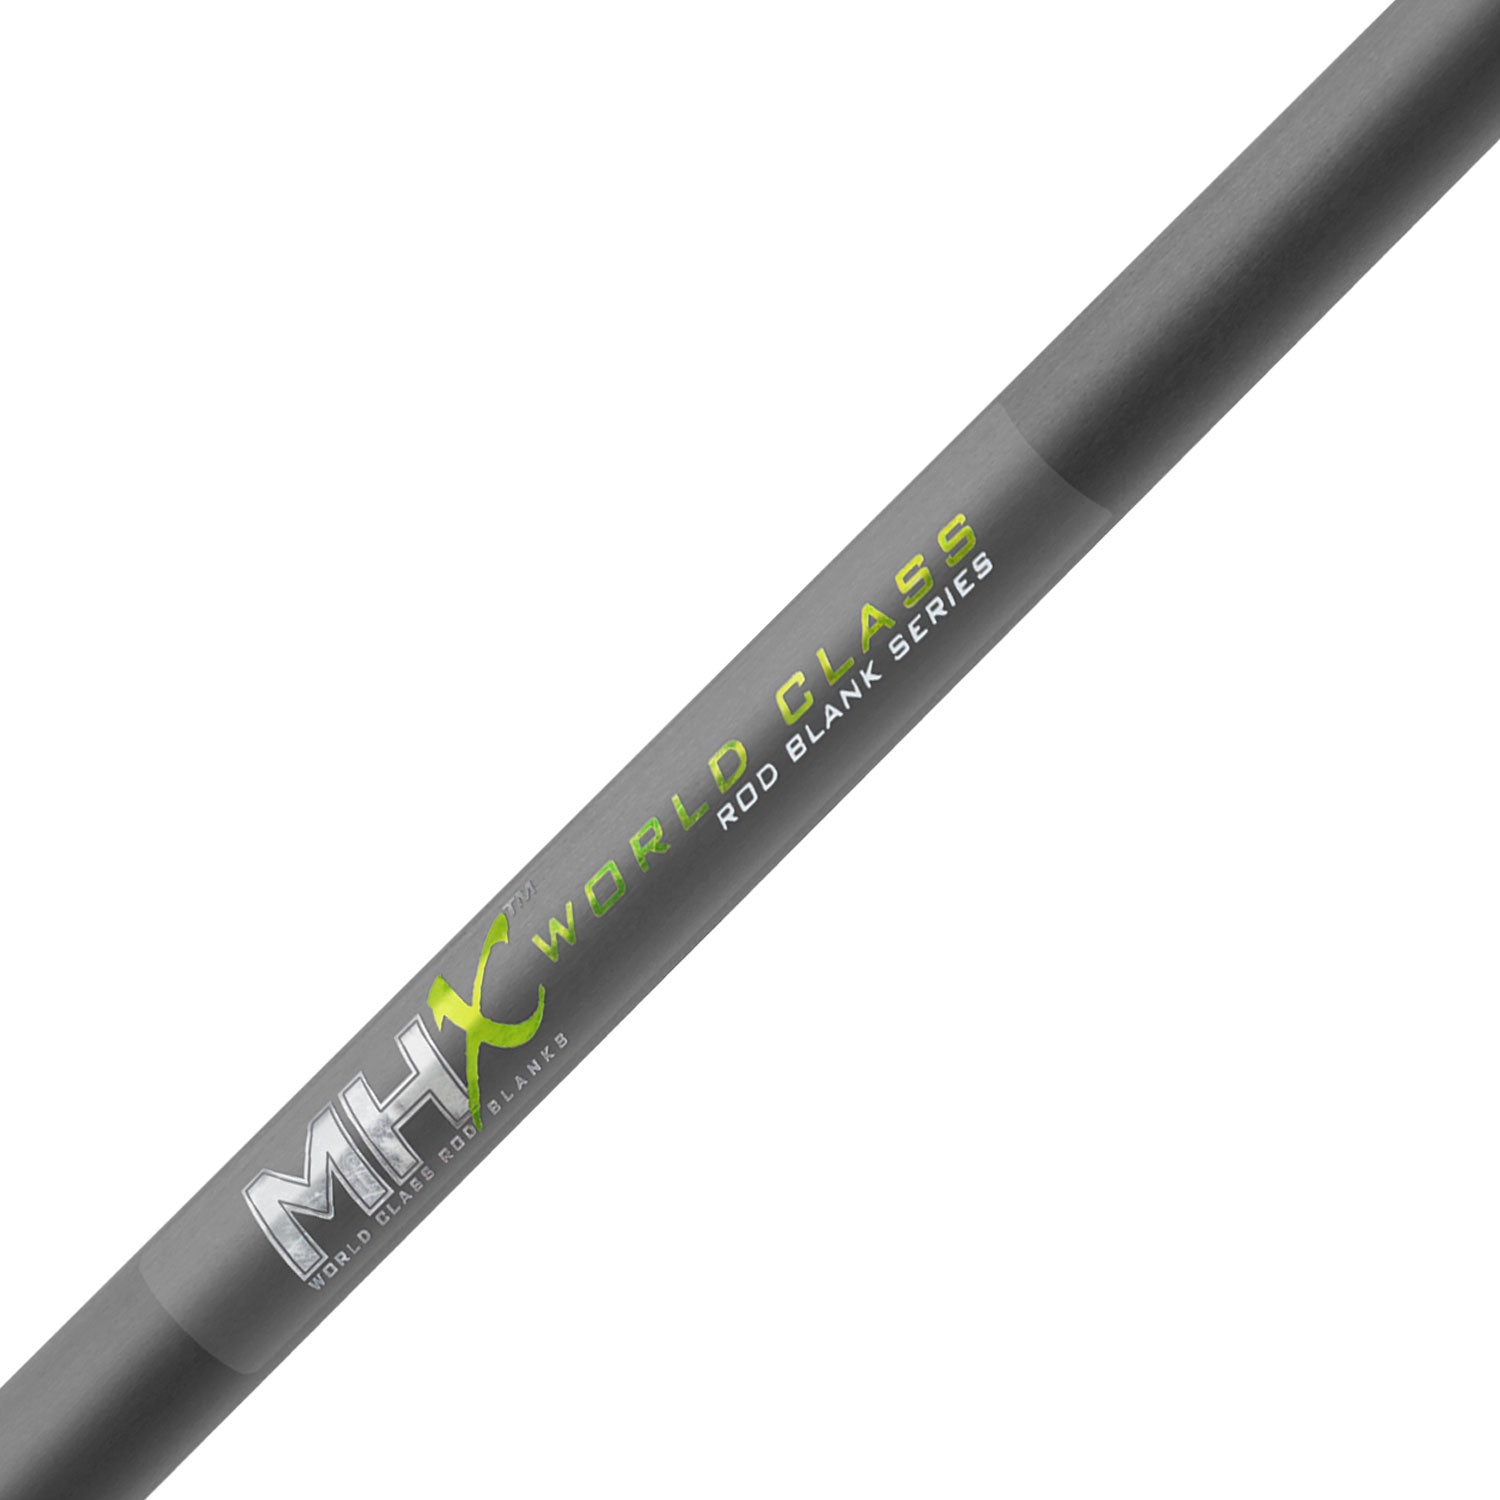 MHX 7'0" Med-Light Popping Rod Blank - P842-MHX